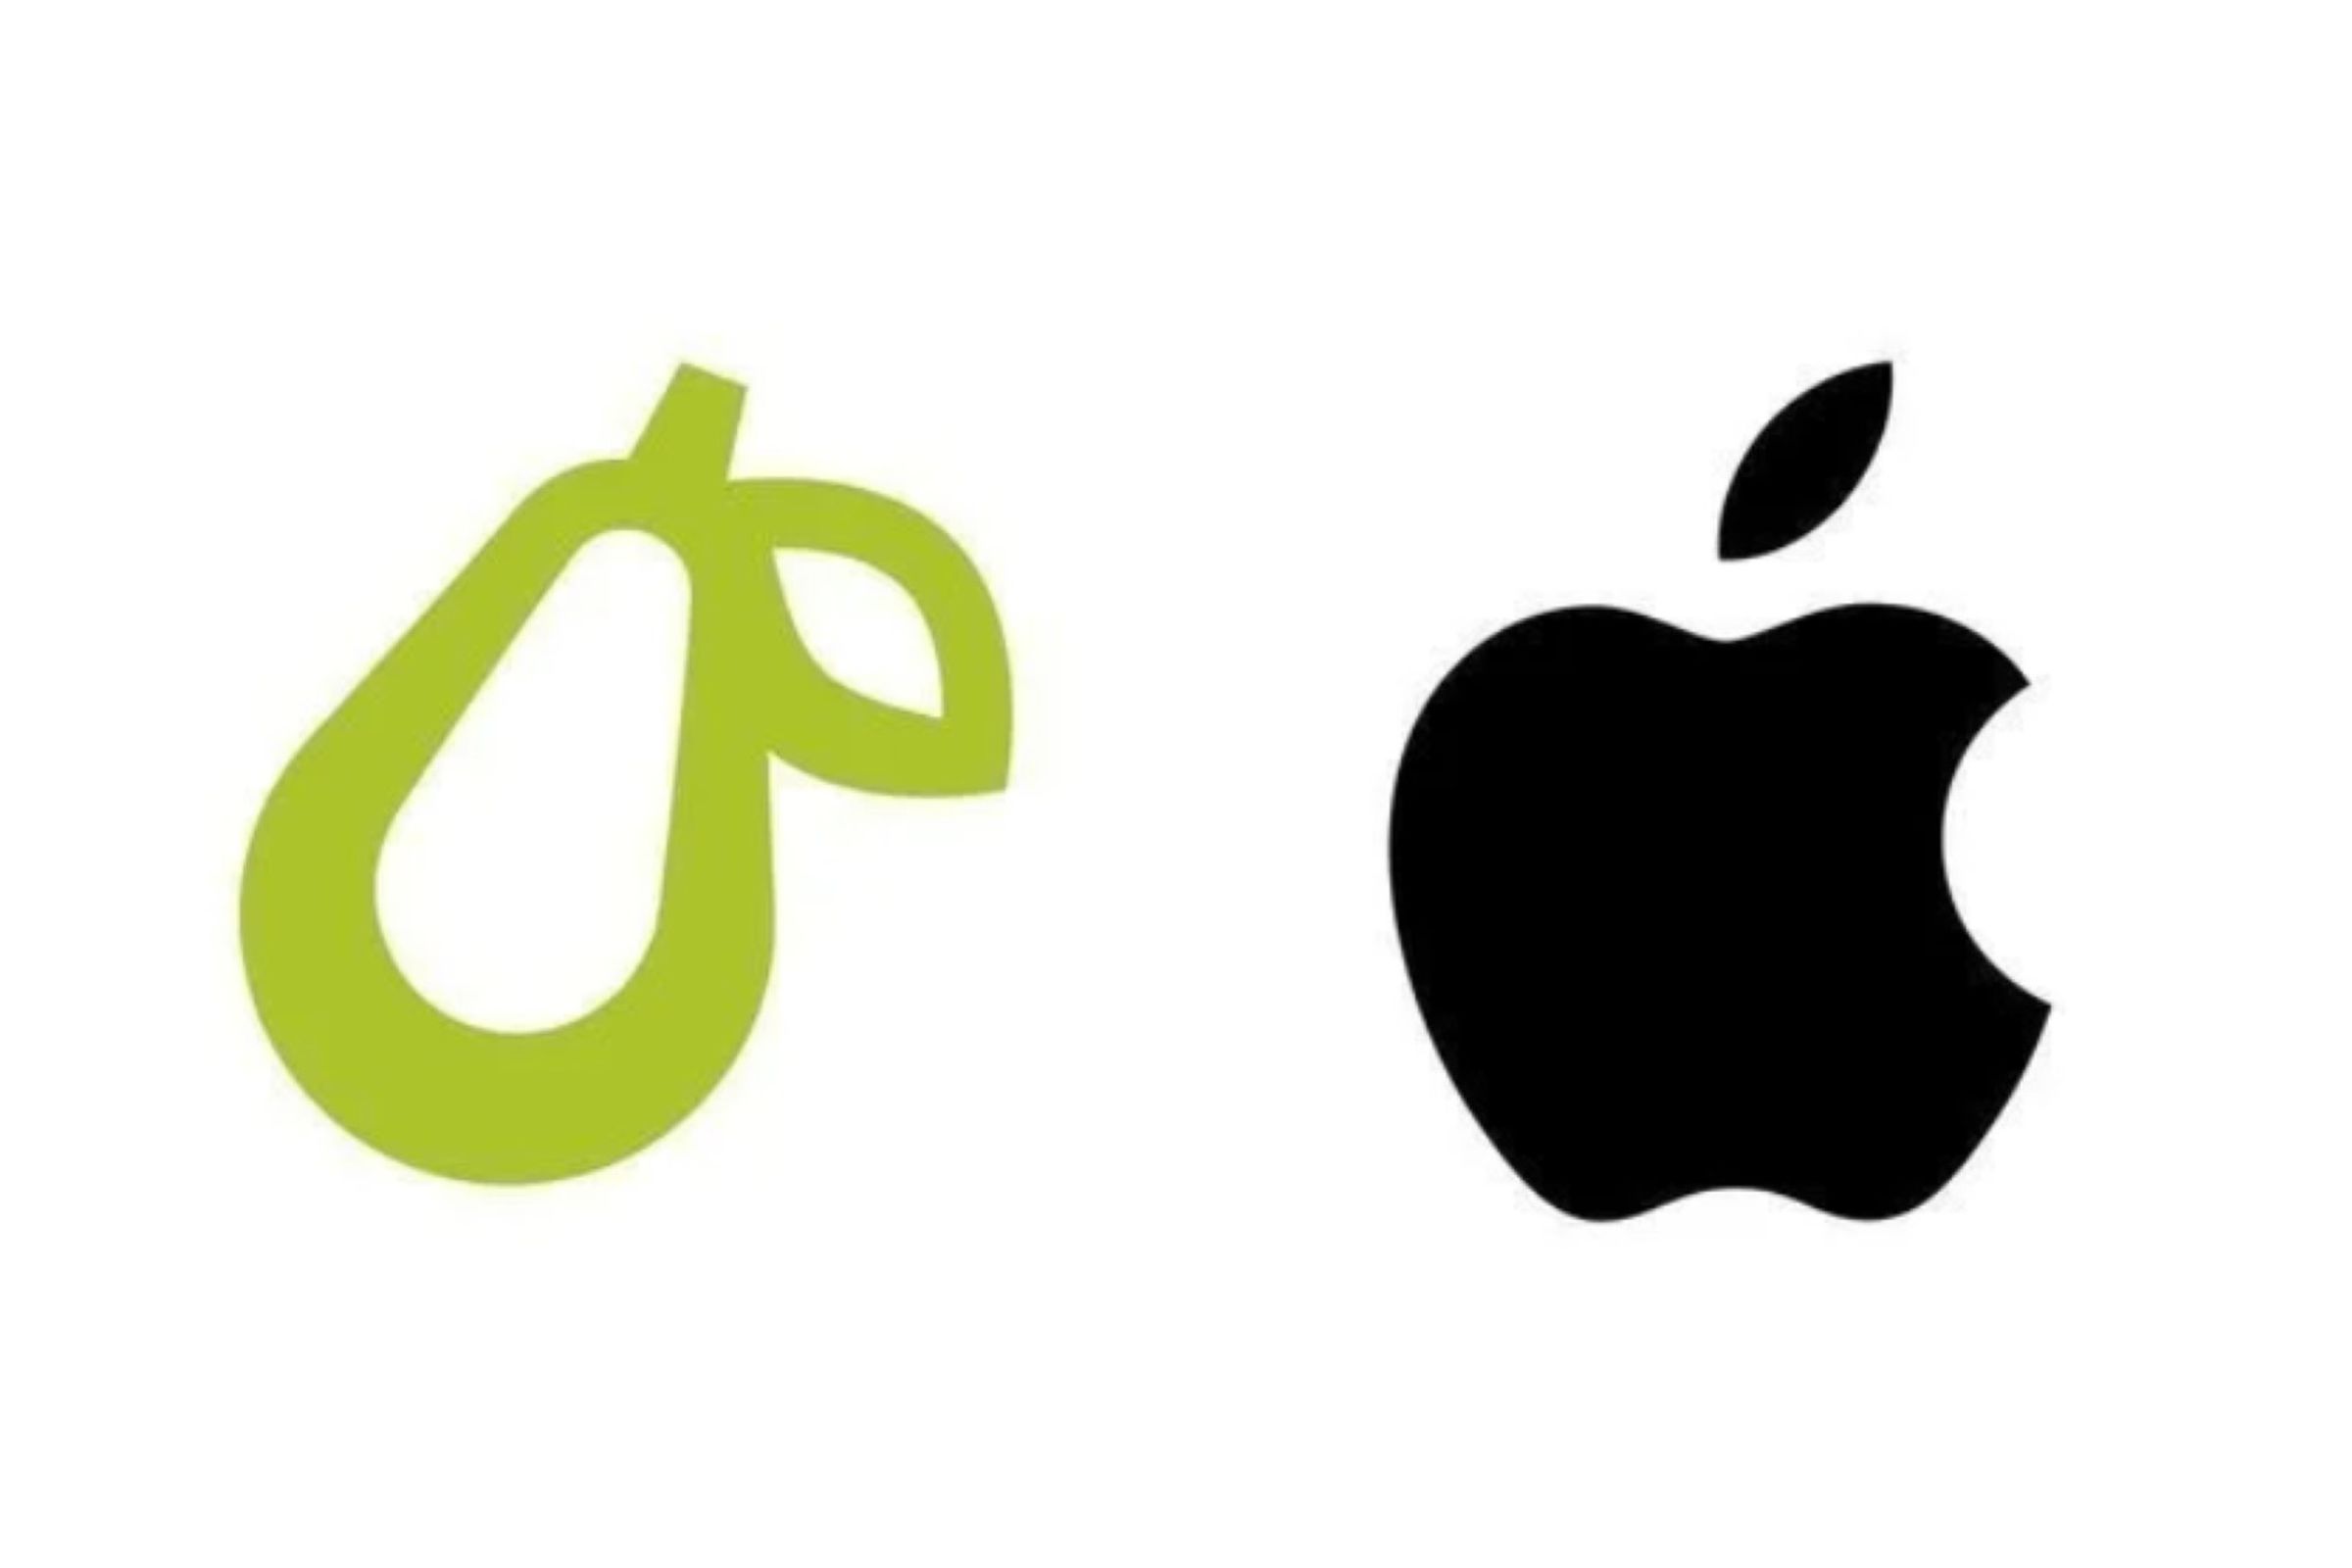 The original Prepear logo, compared to Apple’s.